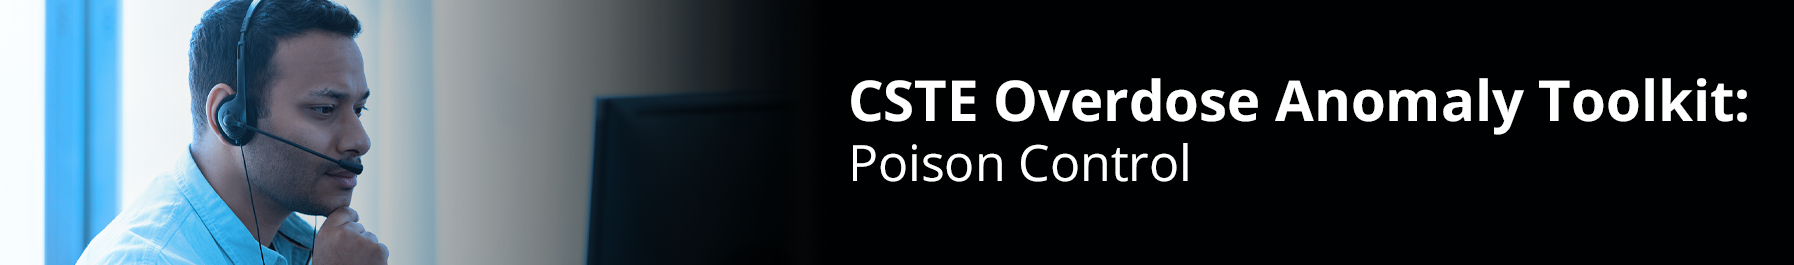 CSTE Overdose Anomaly Toolkit: Poison Control Data